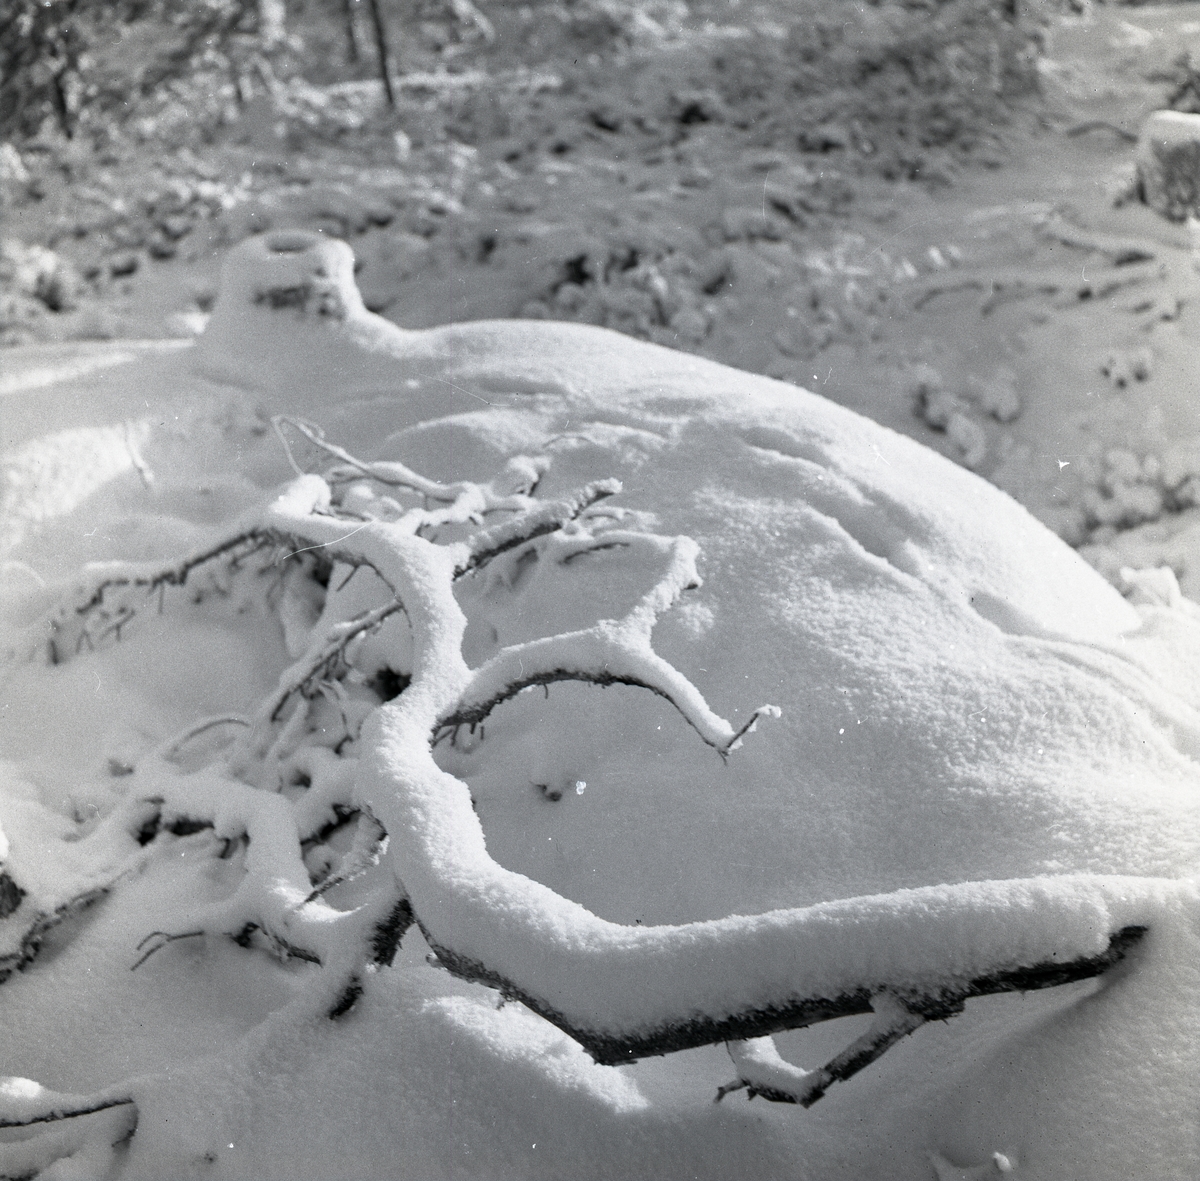 Översnöade grankvistar på marken, julen 1954.